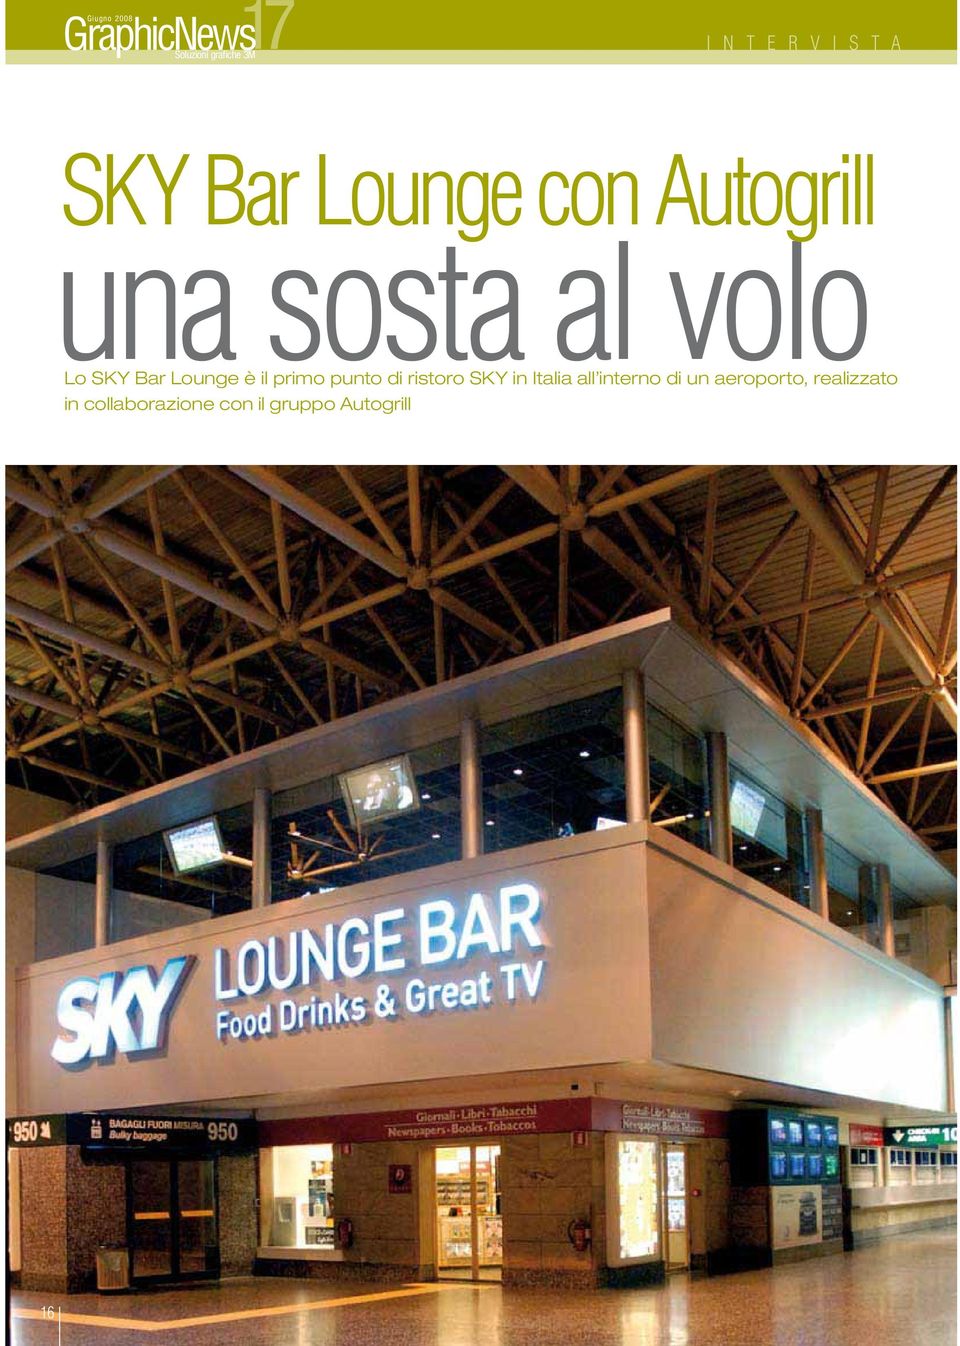 ristoro SKY in Italia all interno di un aeroporto,